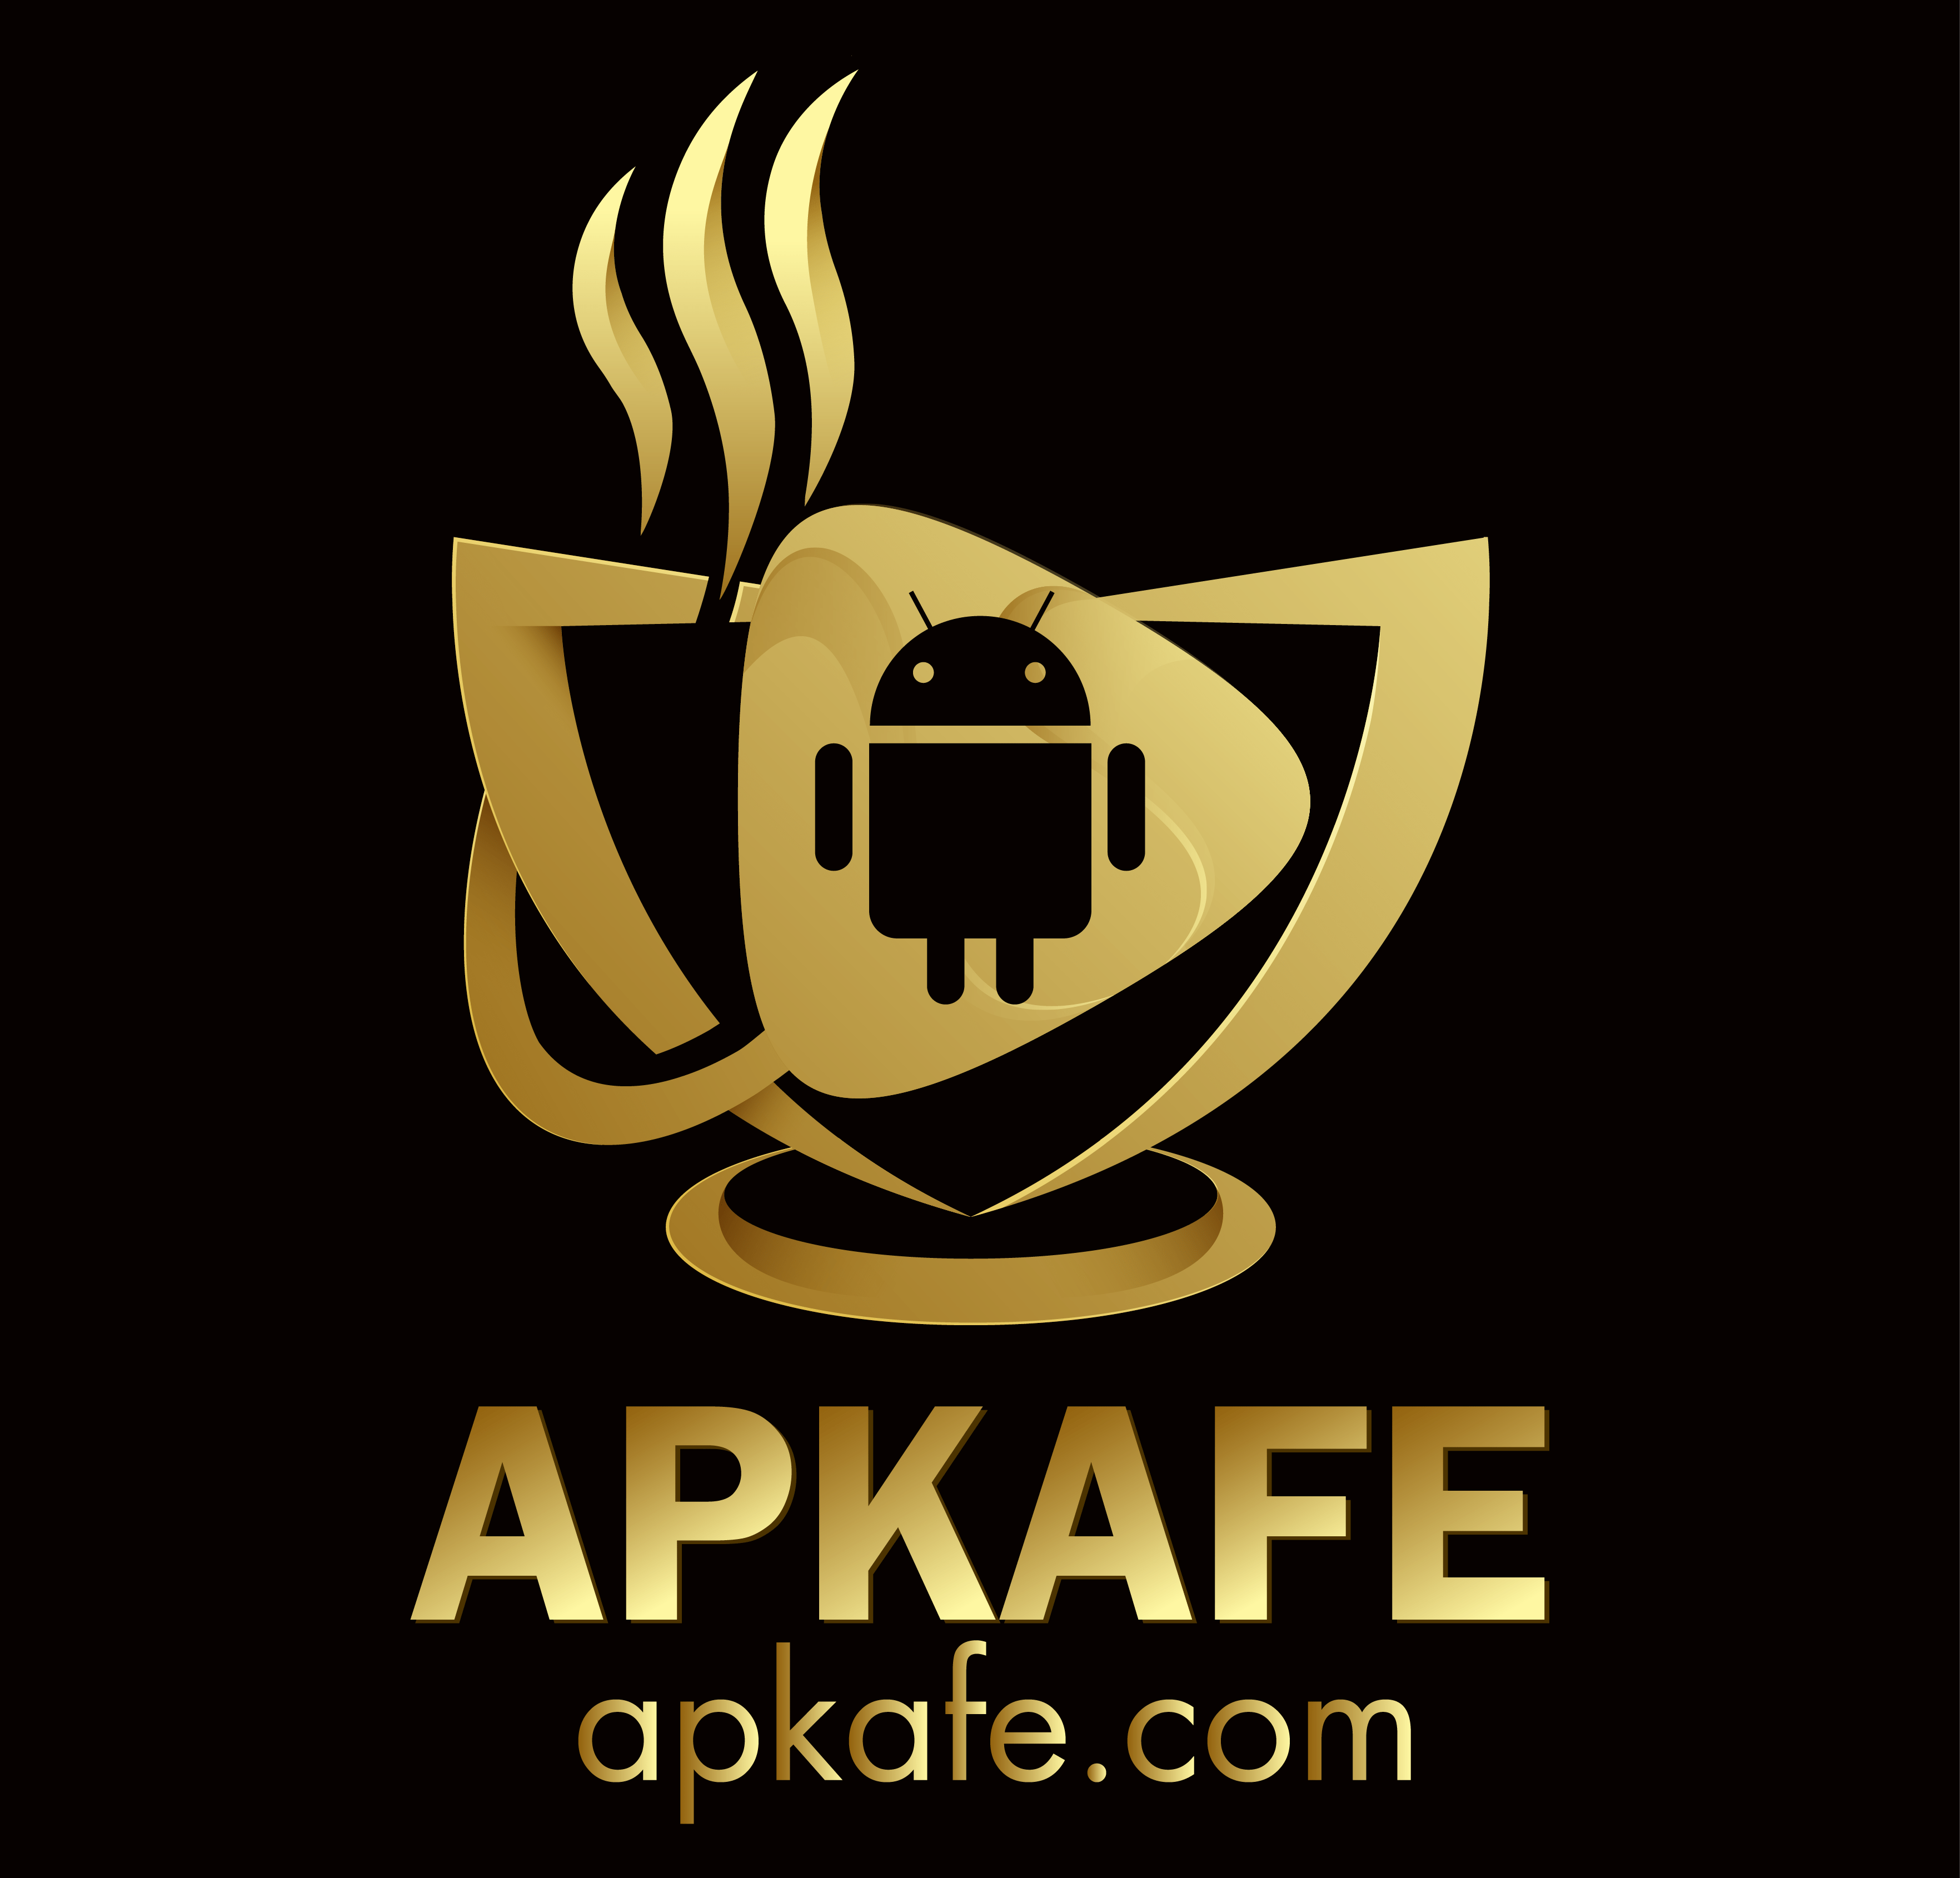 Apkafe.com